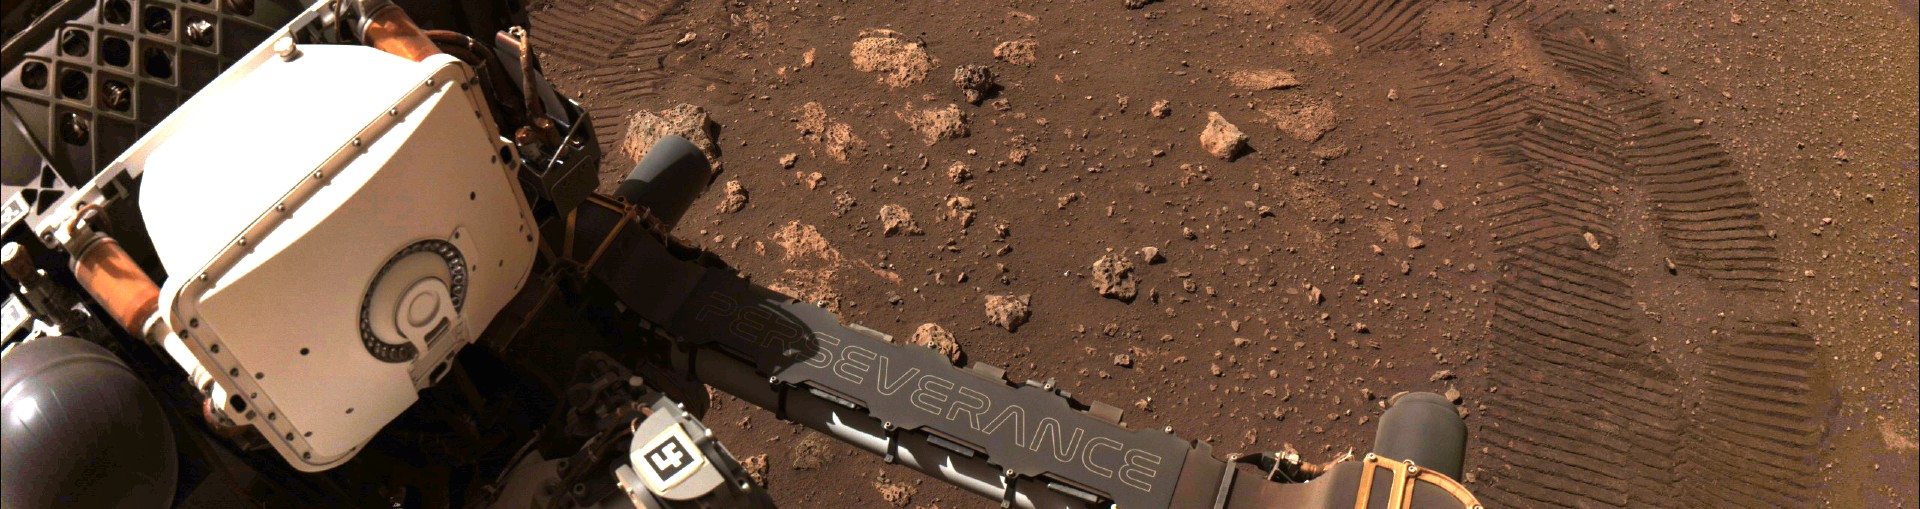 Nasa-køretøjet Perseverance med udstyr fra DTU Space ombord i aktion på Mars. (Foto: Nasa)